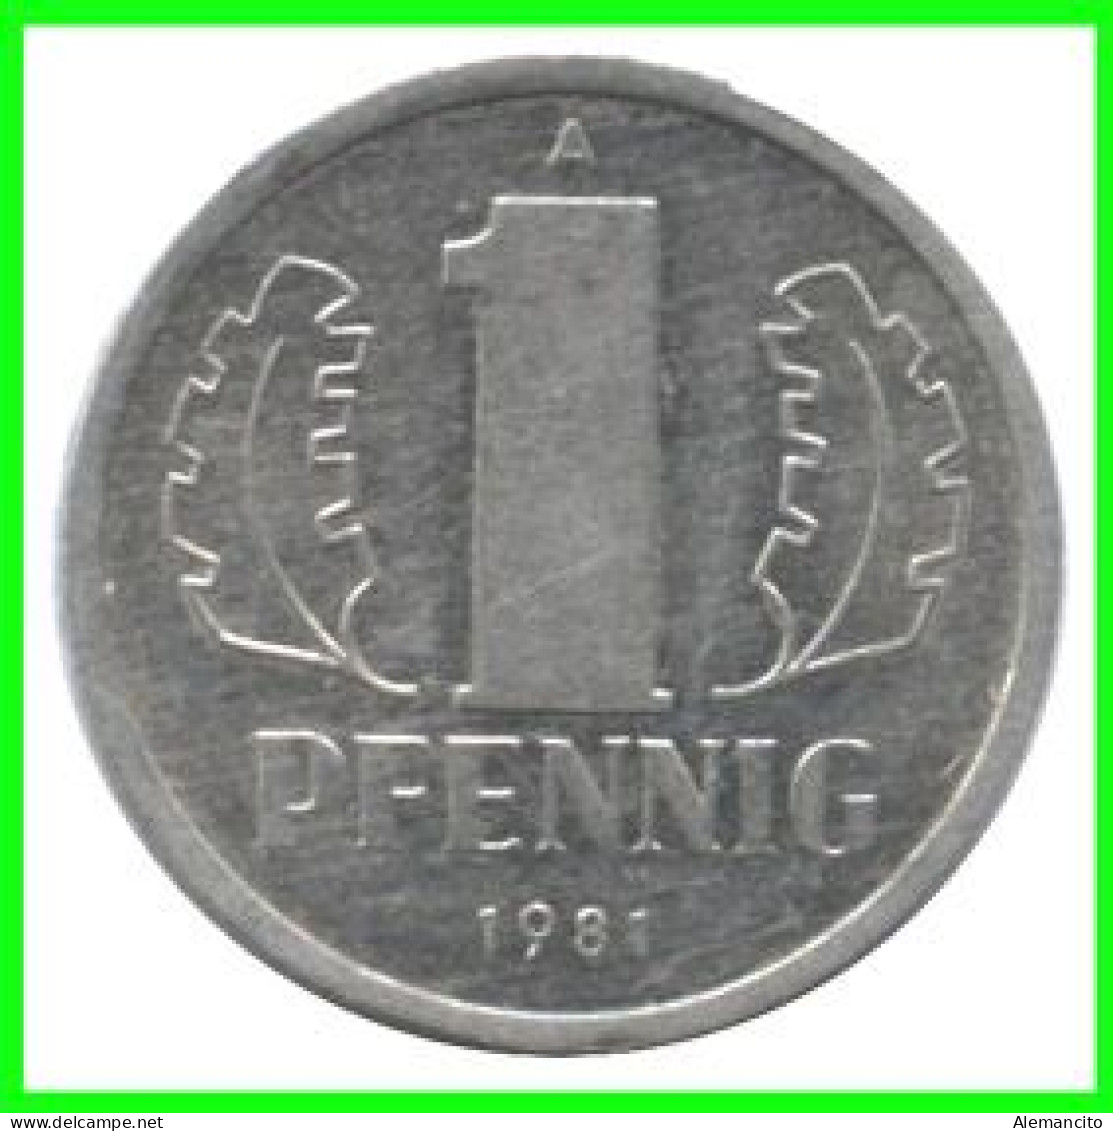 REPUBLICA DEMOCRATICA DE ALEMANIA ( DDR ) MONEDAS DE 1 PFENNING AÑO 1981 CECA-A MONEDA DE 17mm Obv.State ALUMINIO - 1 Pfennig